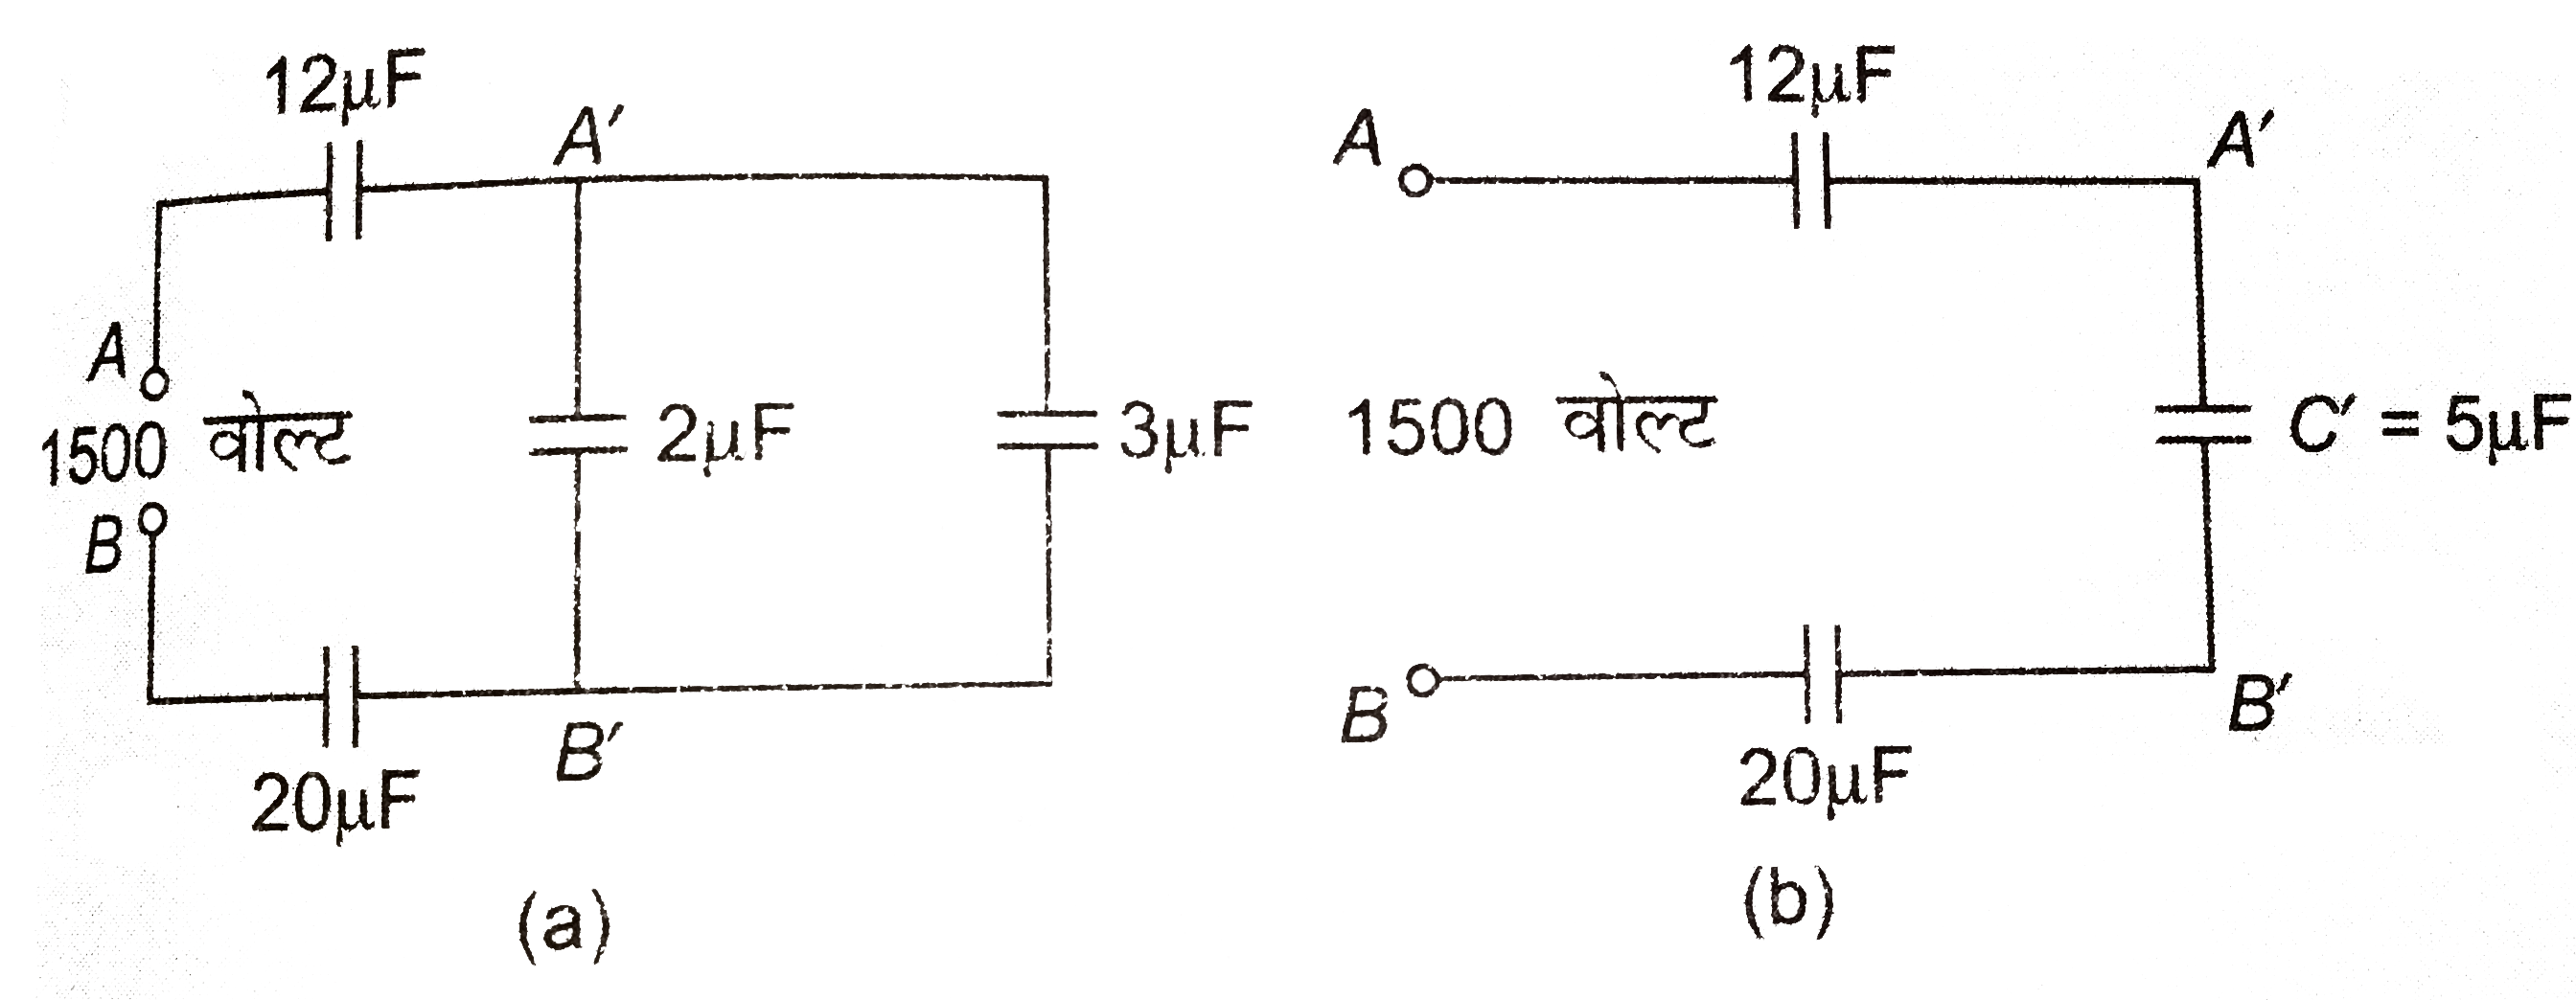 संलग्न चित्र a में ज्ञात कीजिये- a बिंदु a तथा b के बीच तुल्य धारिता, (b ) 2 mu F  धारिता के संधारित्र की प्लेटों के बीच विभवांतर , ( c ) 3 mu F  धारिता के संधारित्र पर आवेश, ( d ) 20 mu F  धारिता के संधारित्र में संचित्र ऊर्जा, ( E ) 12 mu F  धारिता के संधारित्र में संचित ऊर्जा।